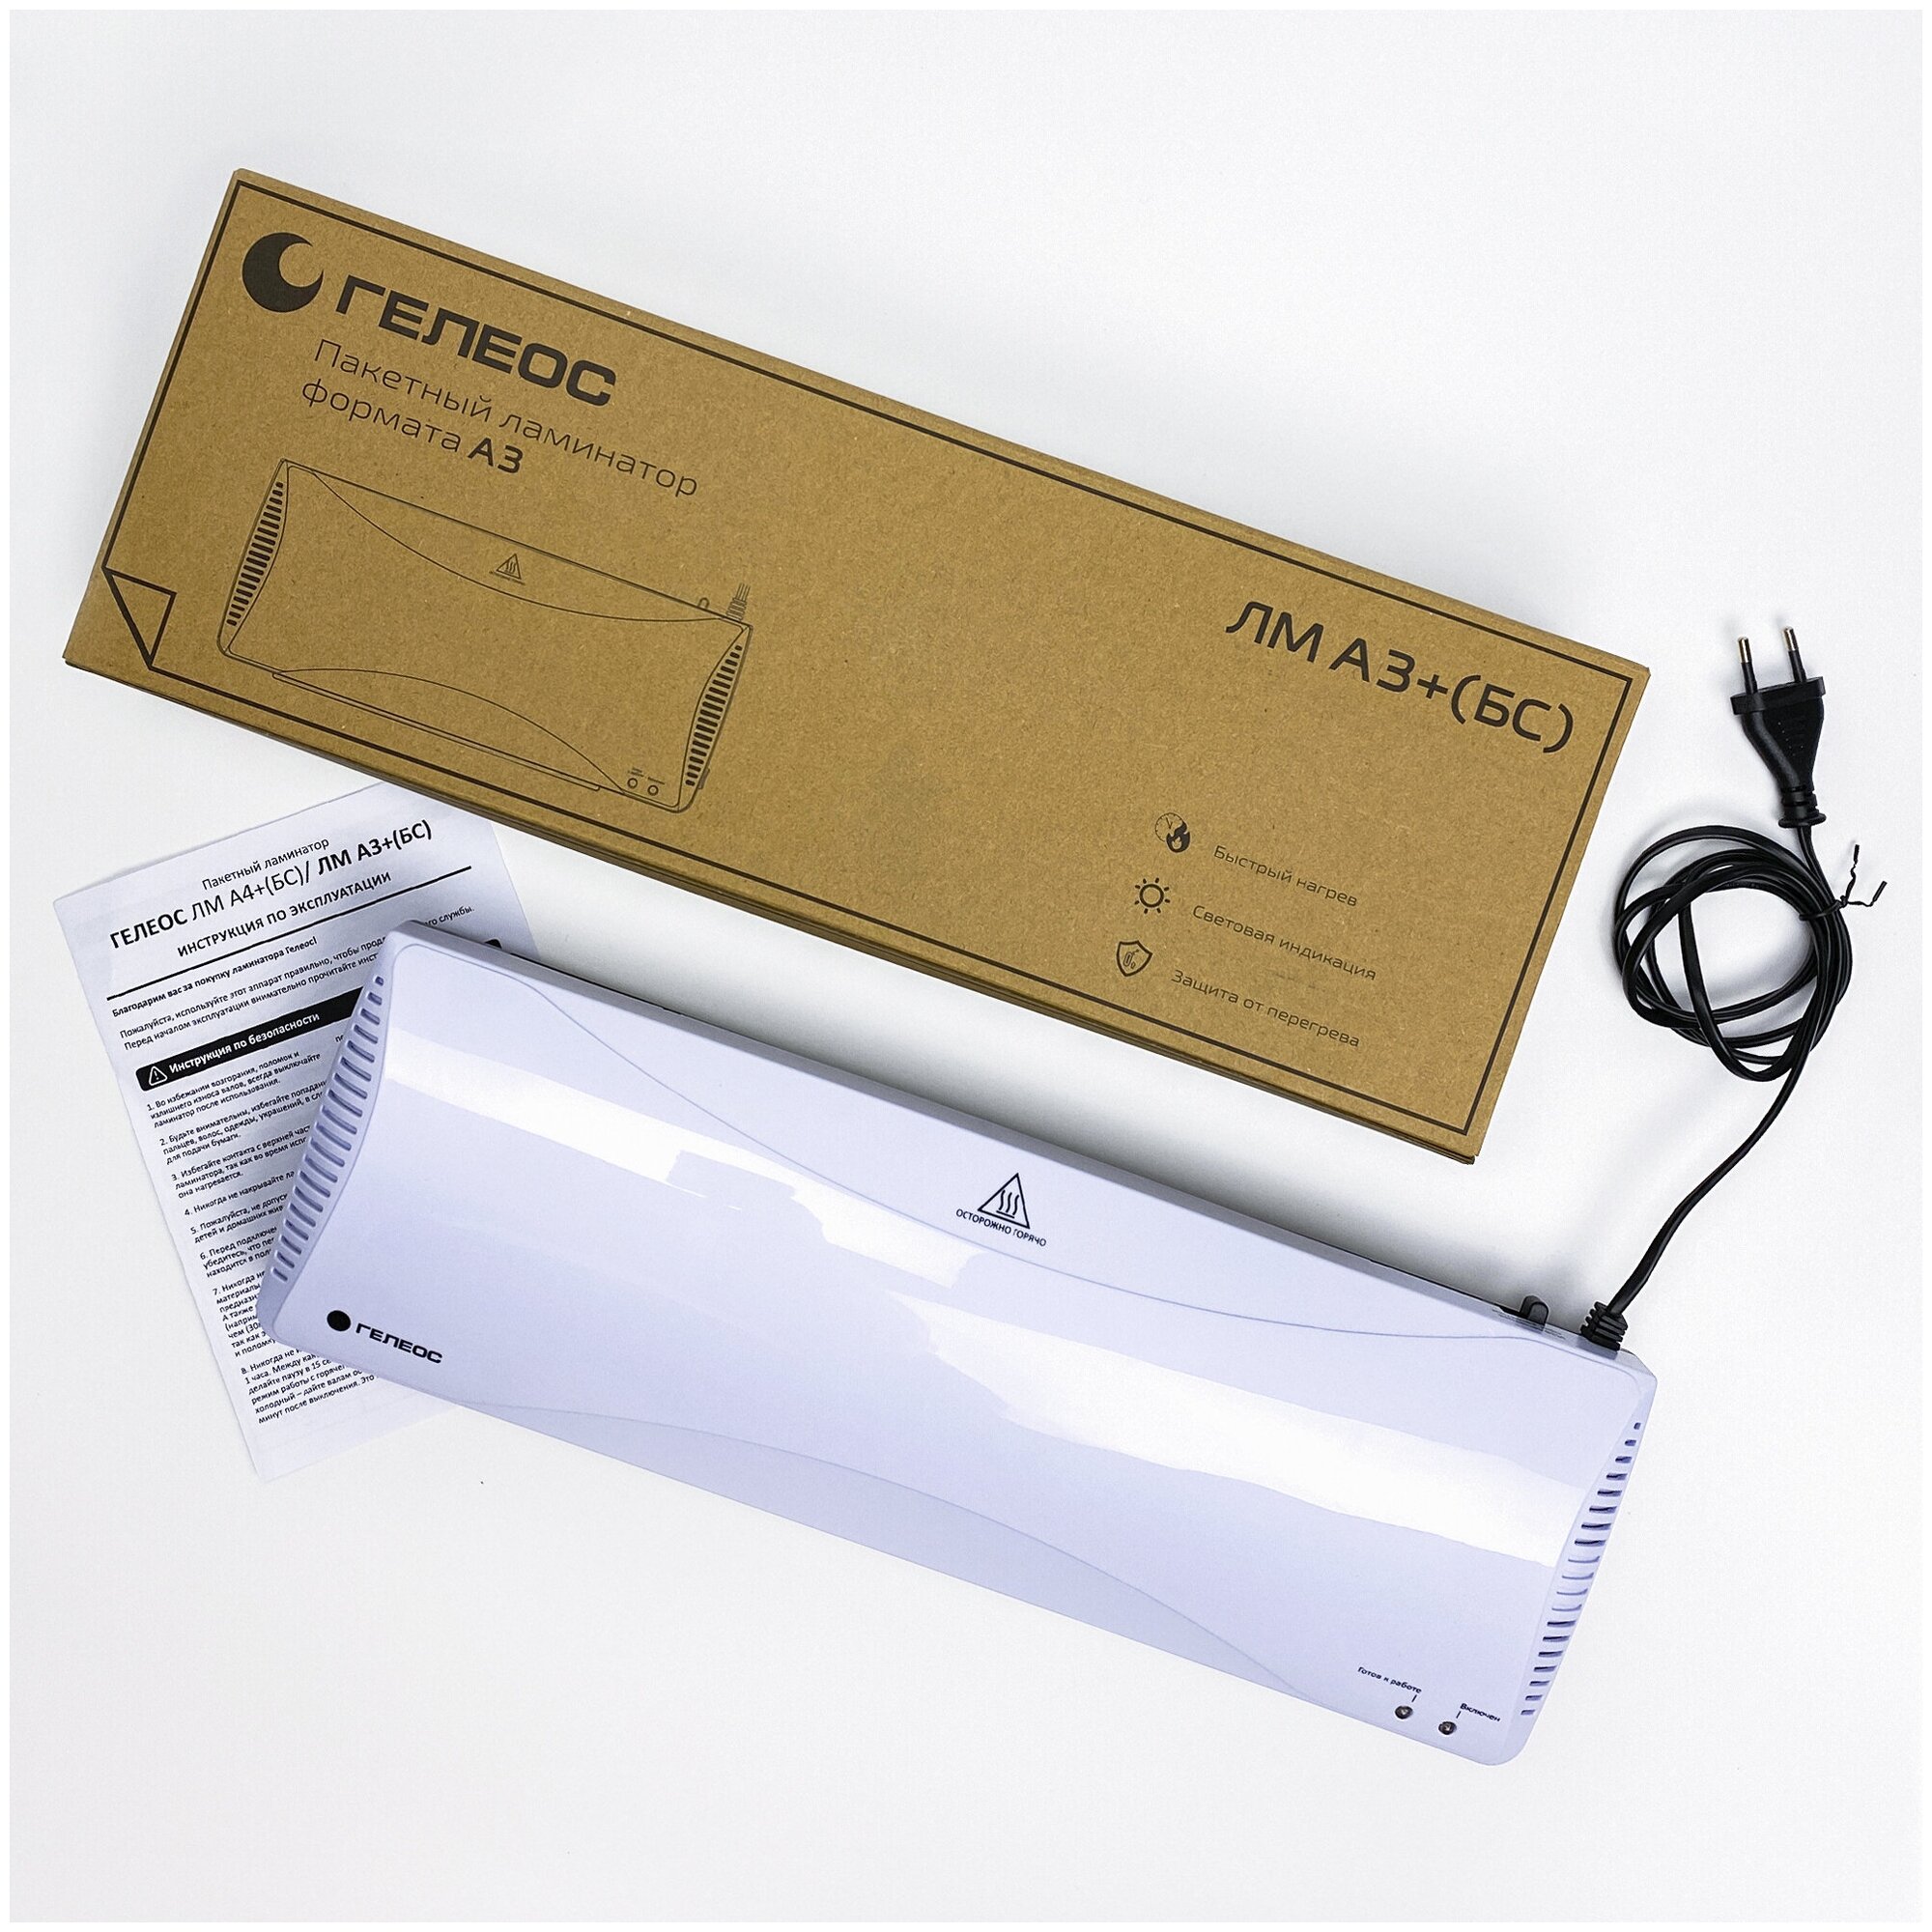 Ламинатор бумаги/фотографий/картона пакетный ГЕЛЕОС ЛМ А3+(БС) для дома и офиса